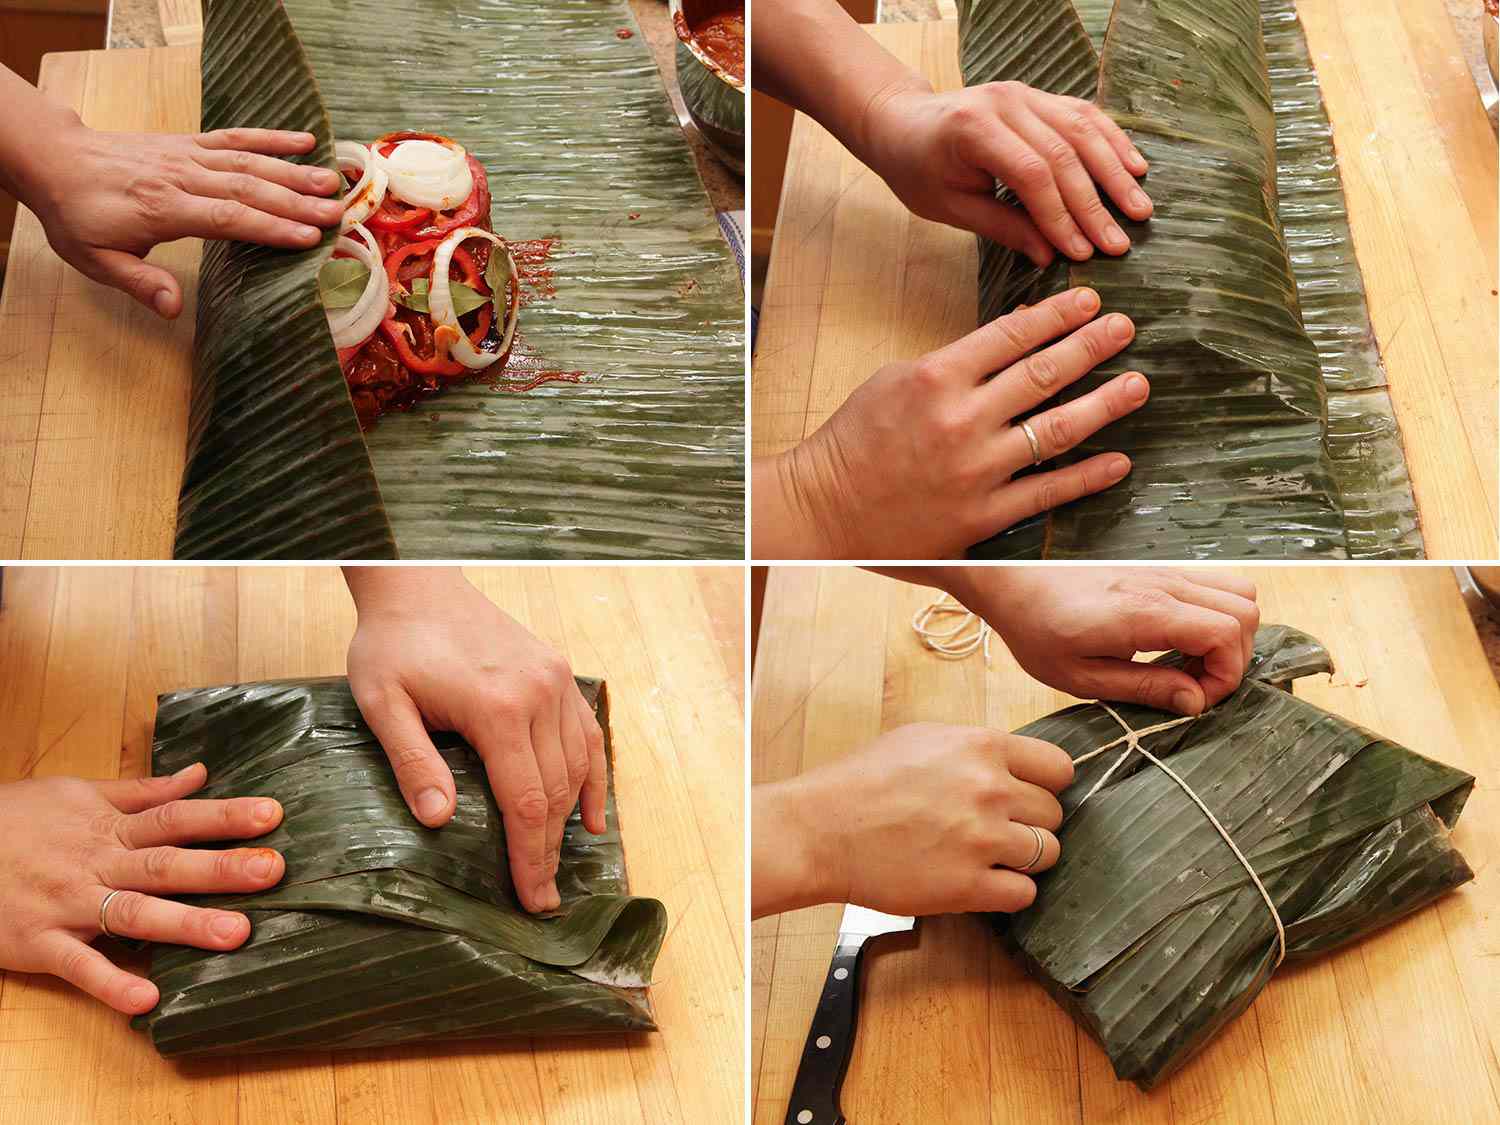 Wrapping pork shoulder inside banana leaves.